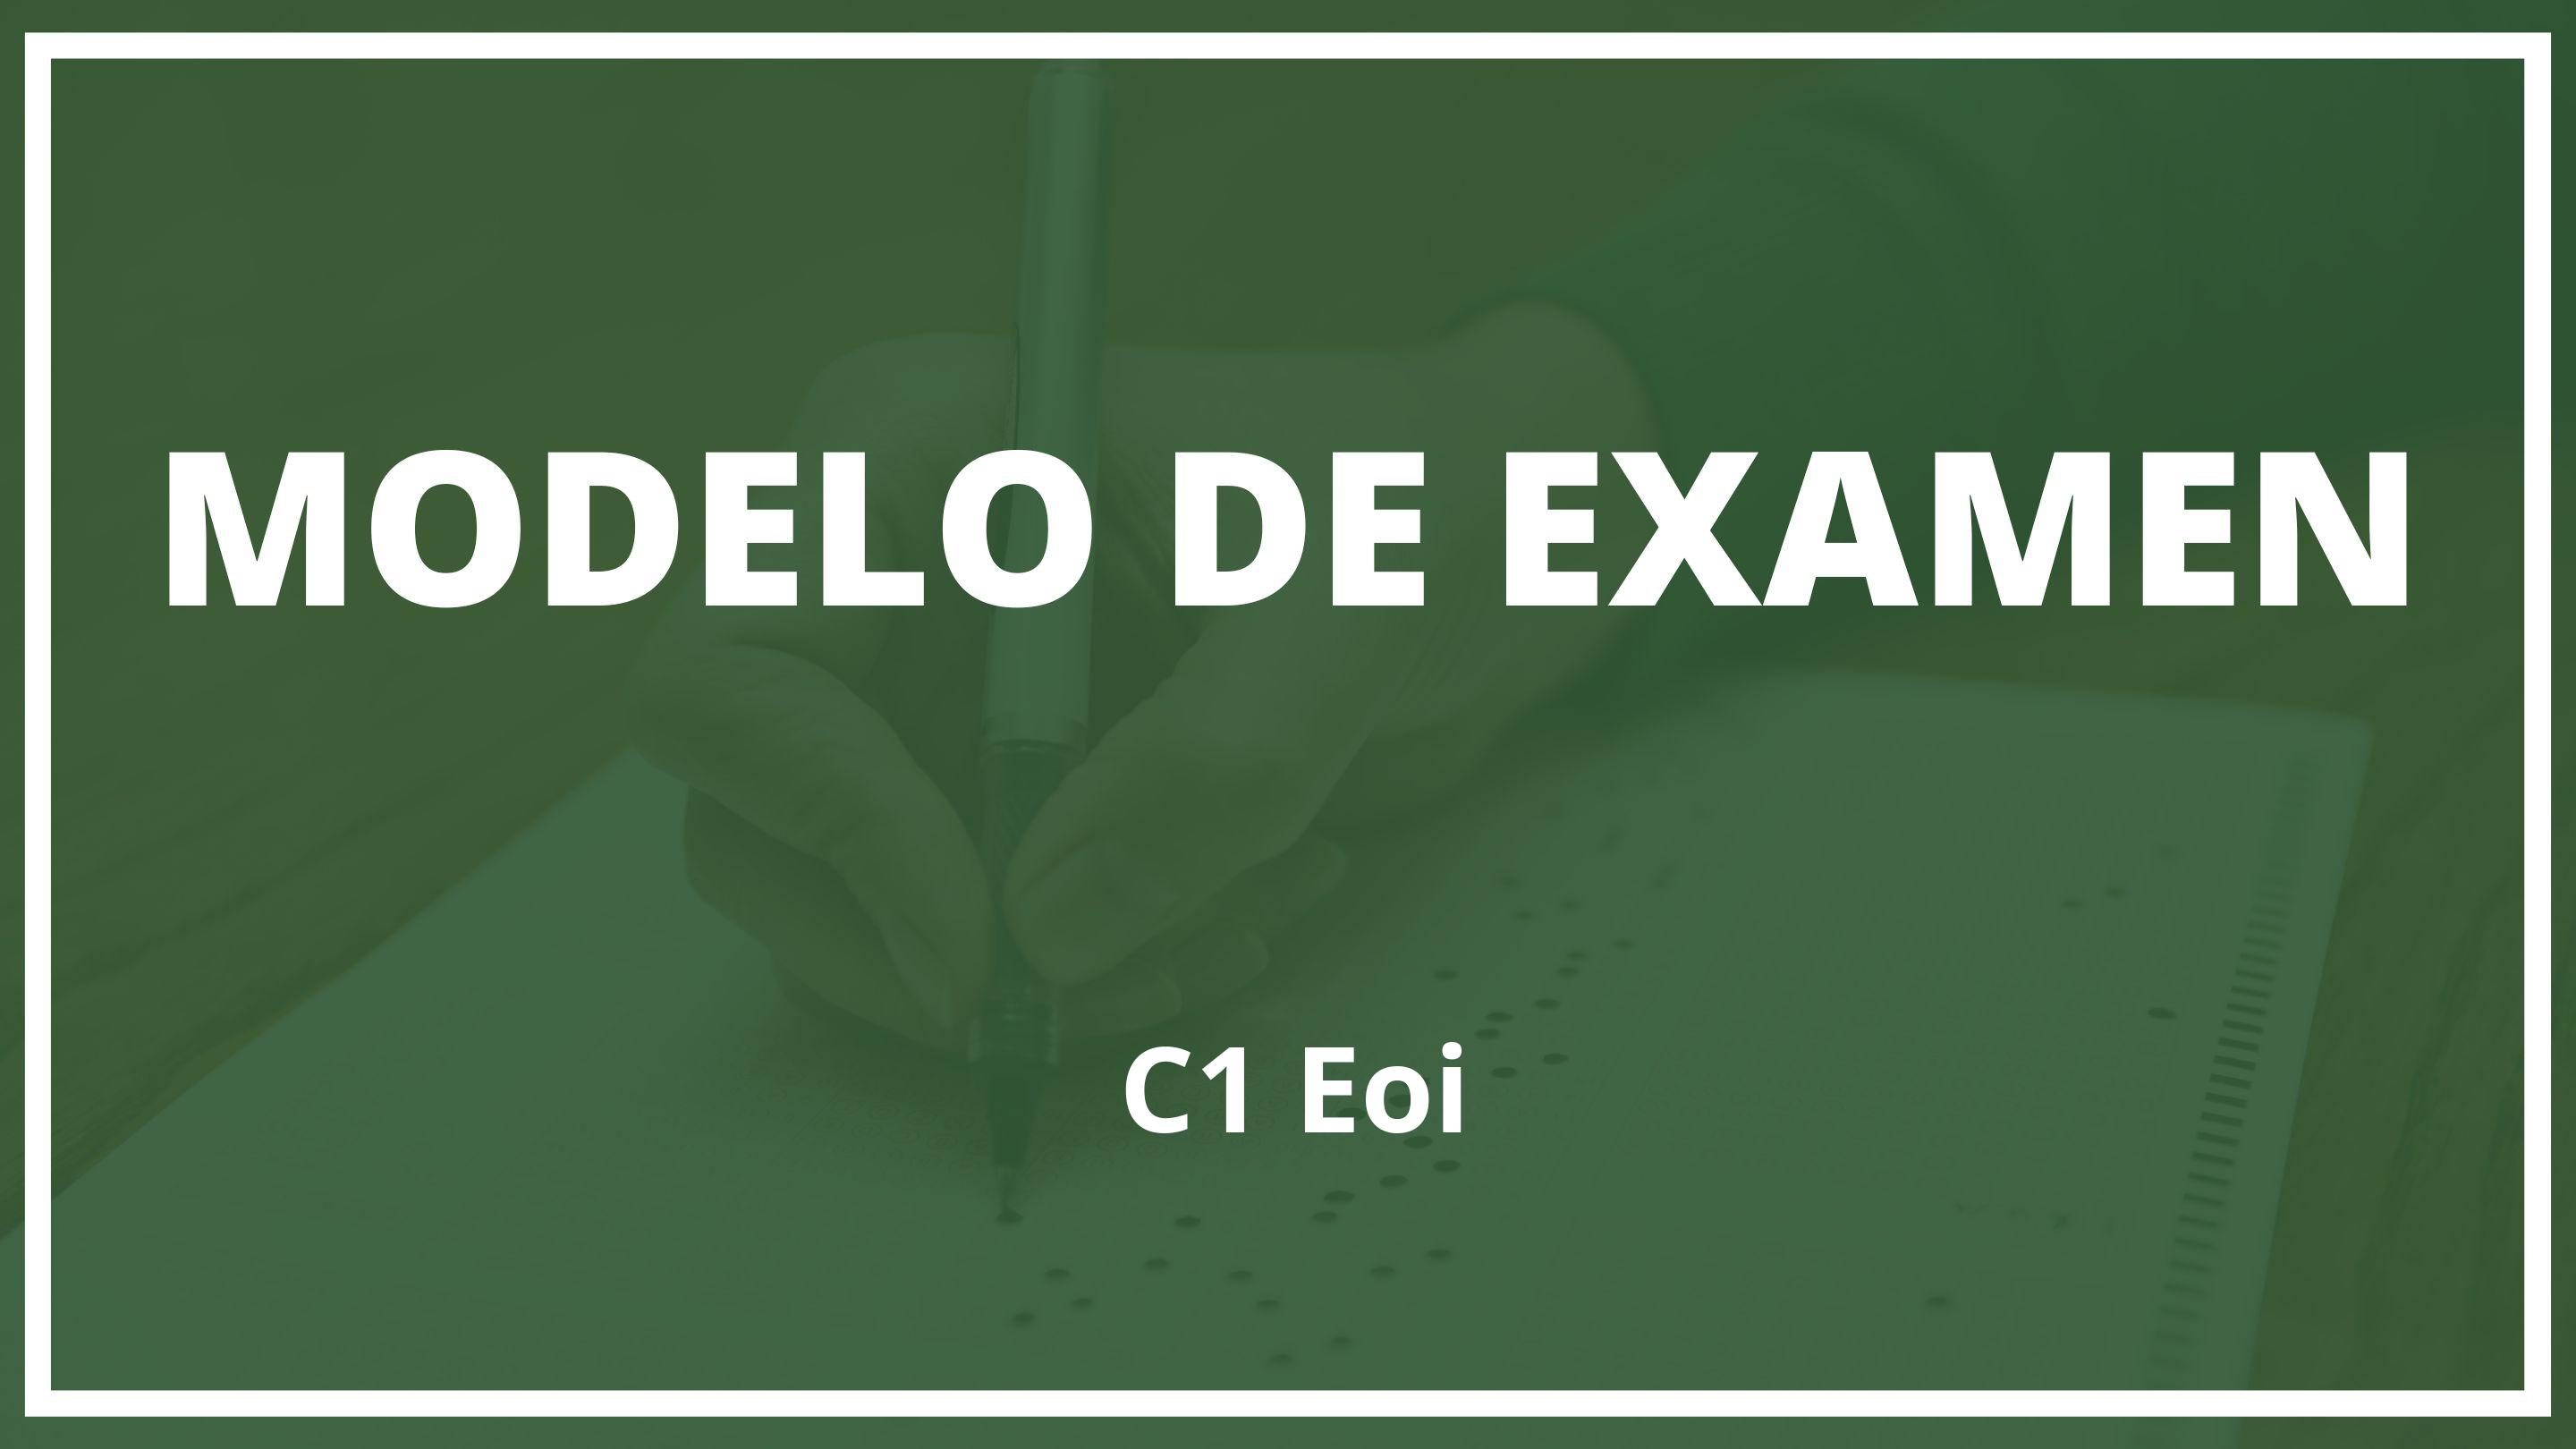 Examen C1 Eoi